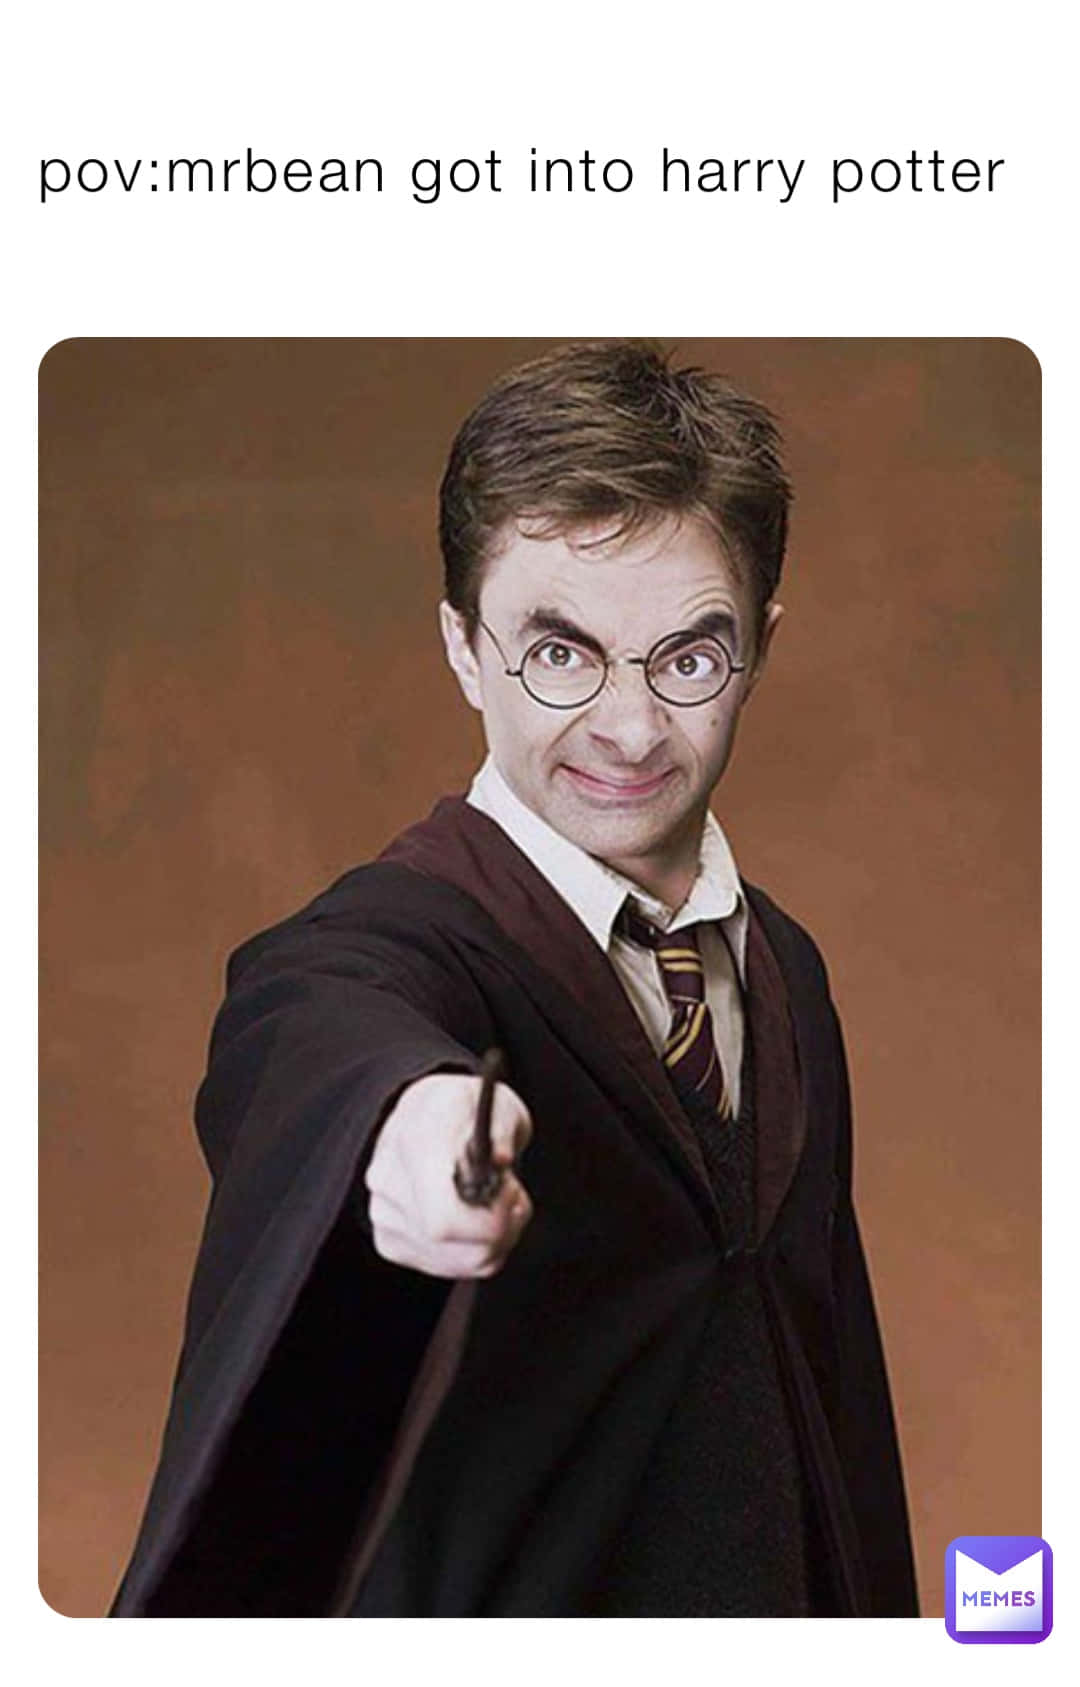 Divertidaimagen Editada De Harry Potter Y Mr Bean.